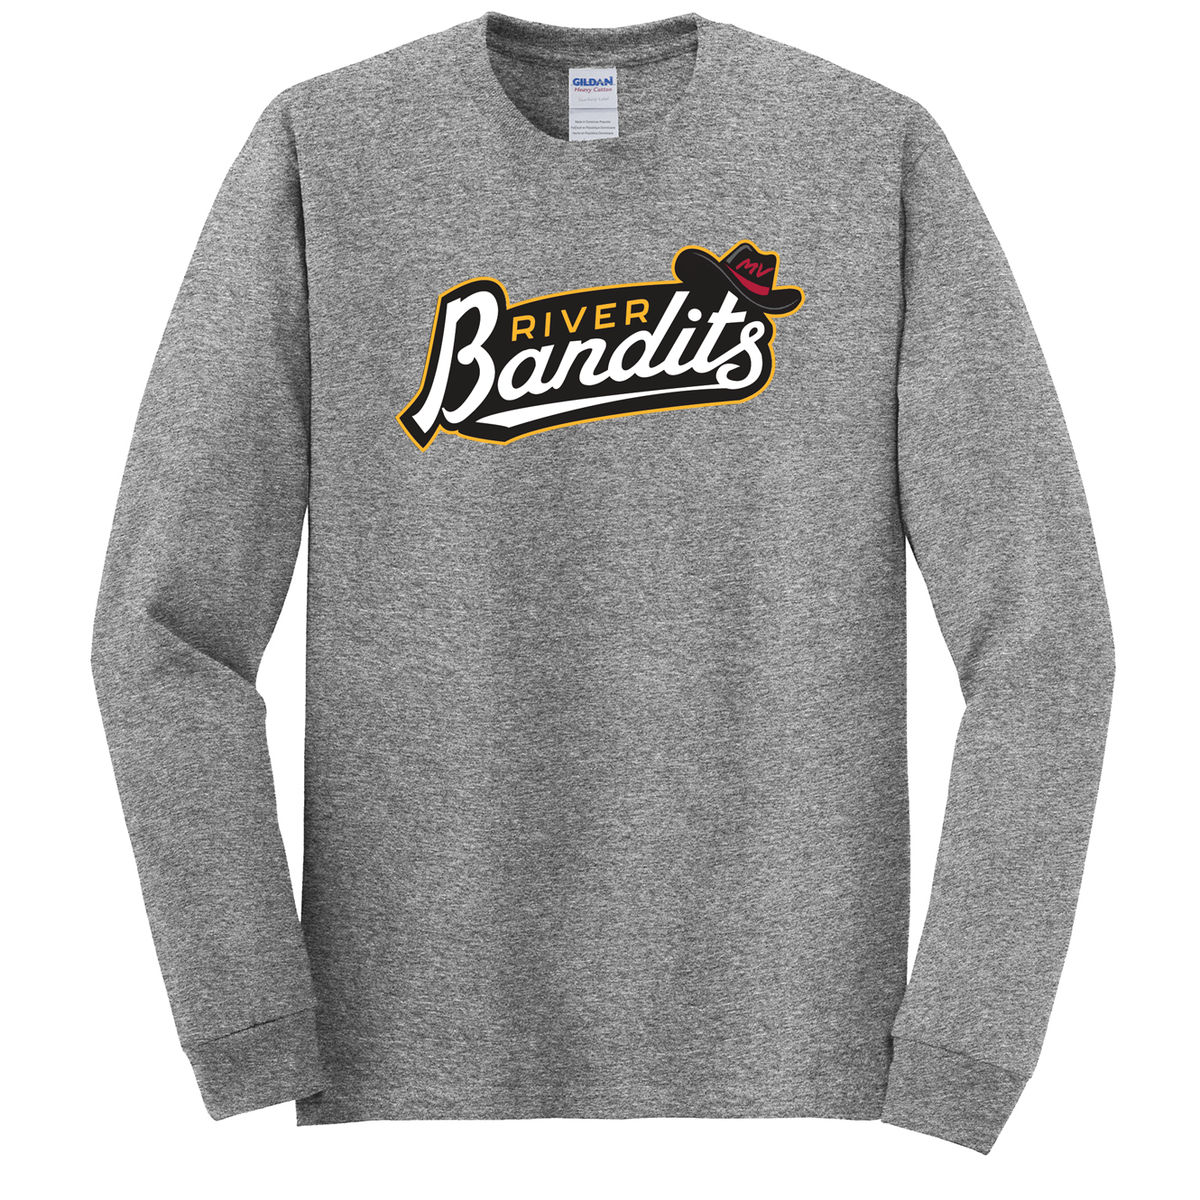 River Bandits Baseball Cotton Long Sleeve Shirt